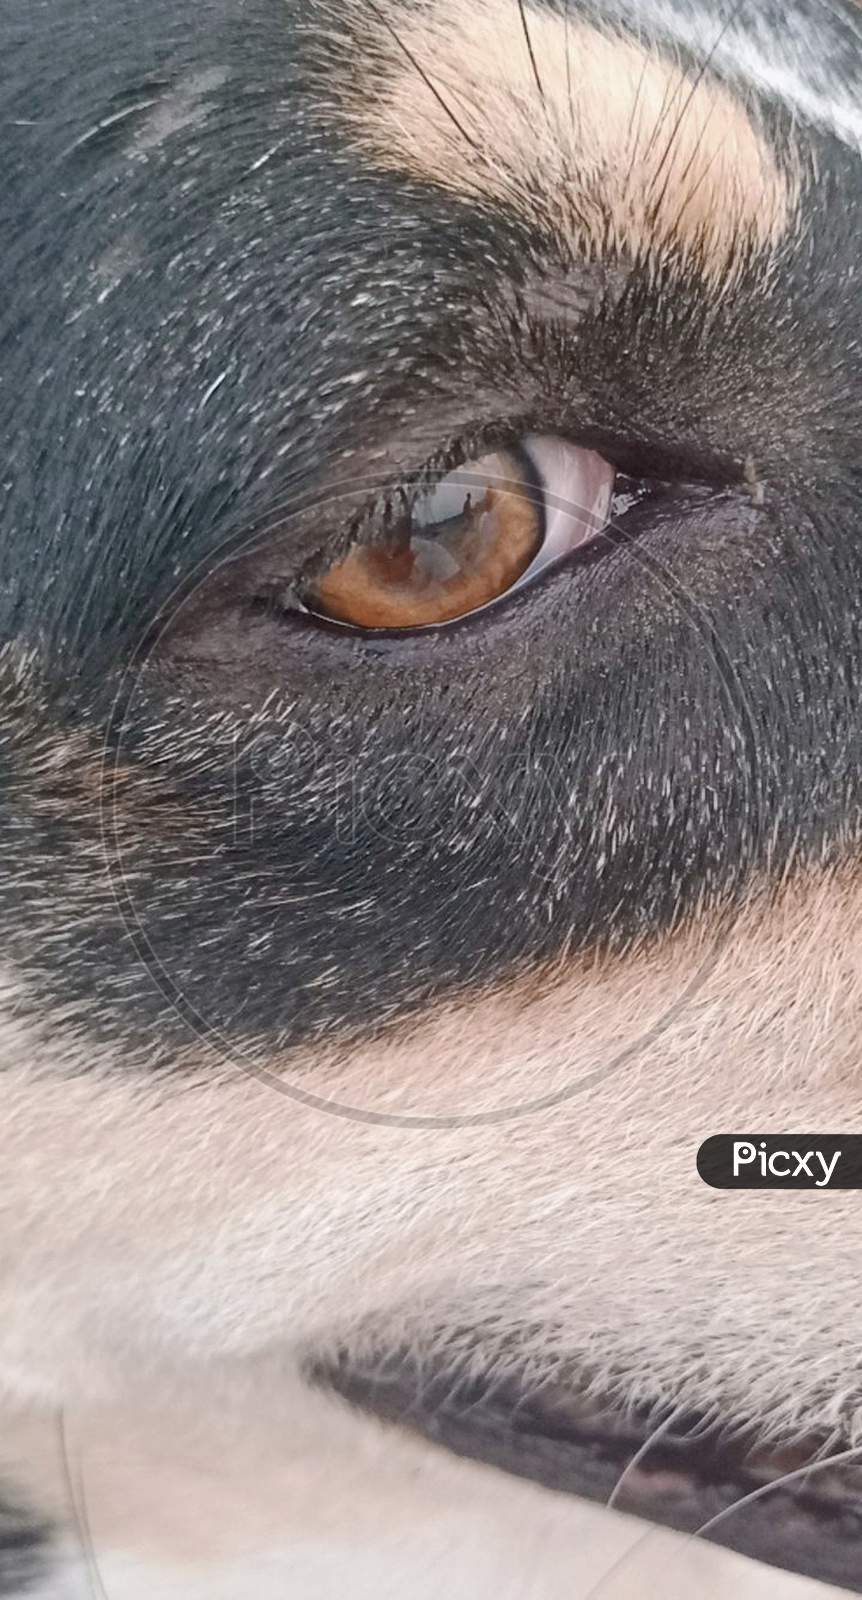 Dog's eye